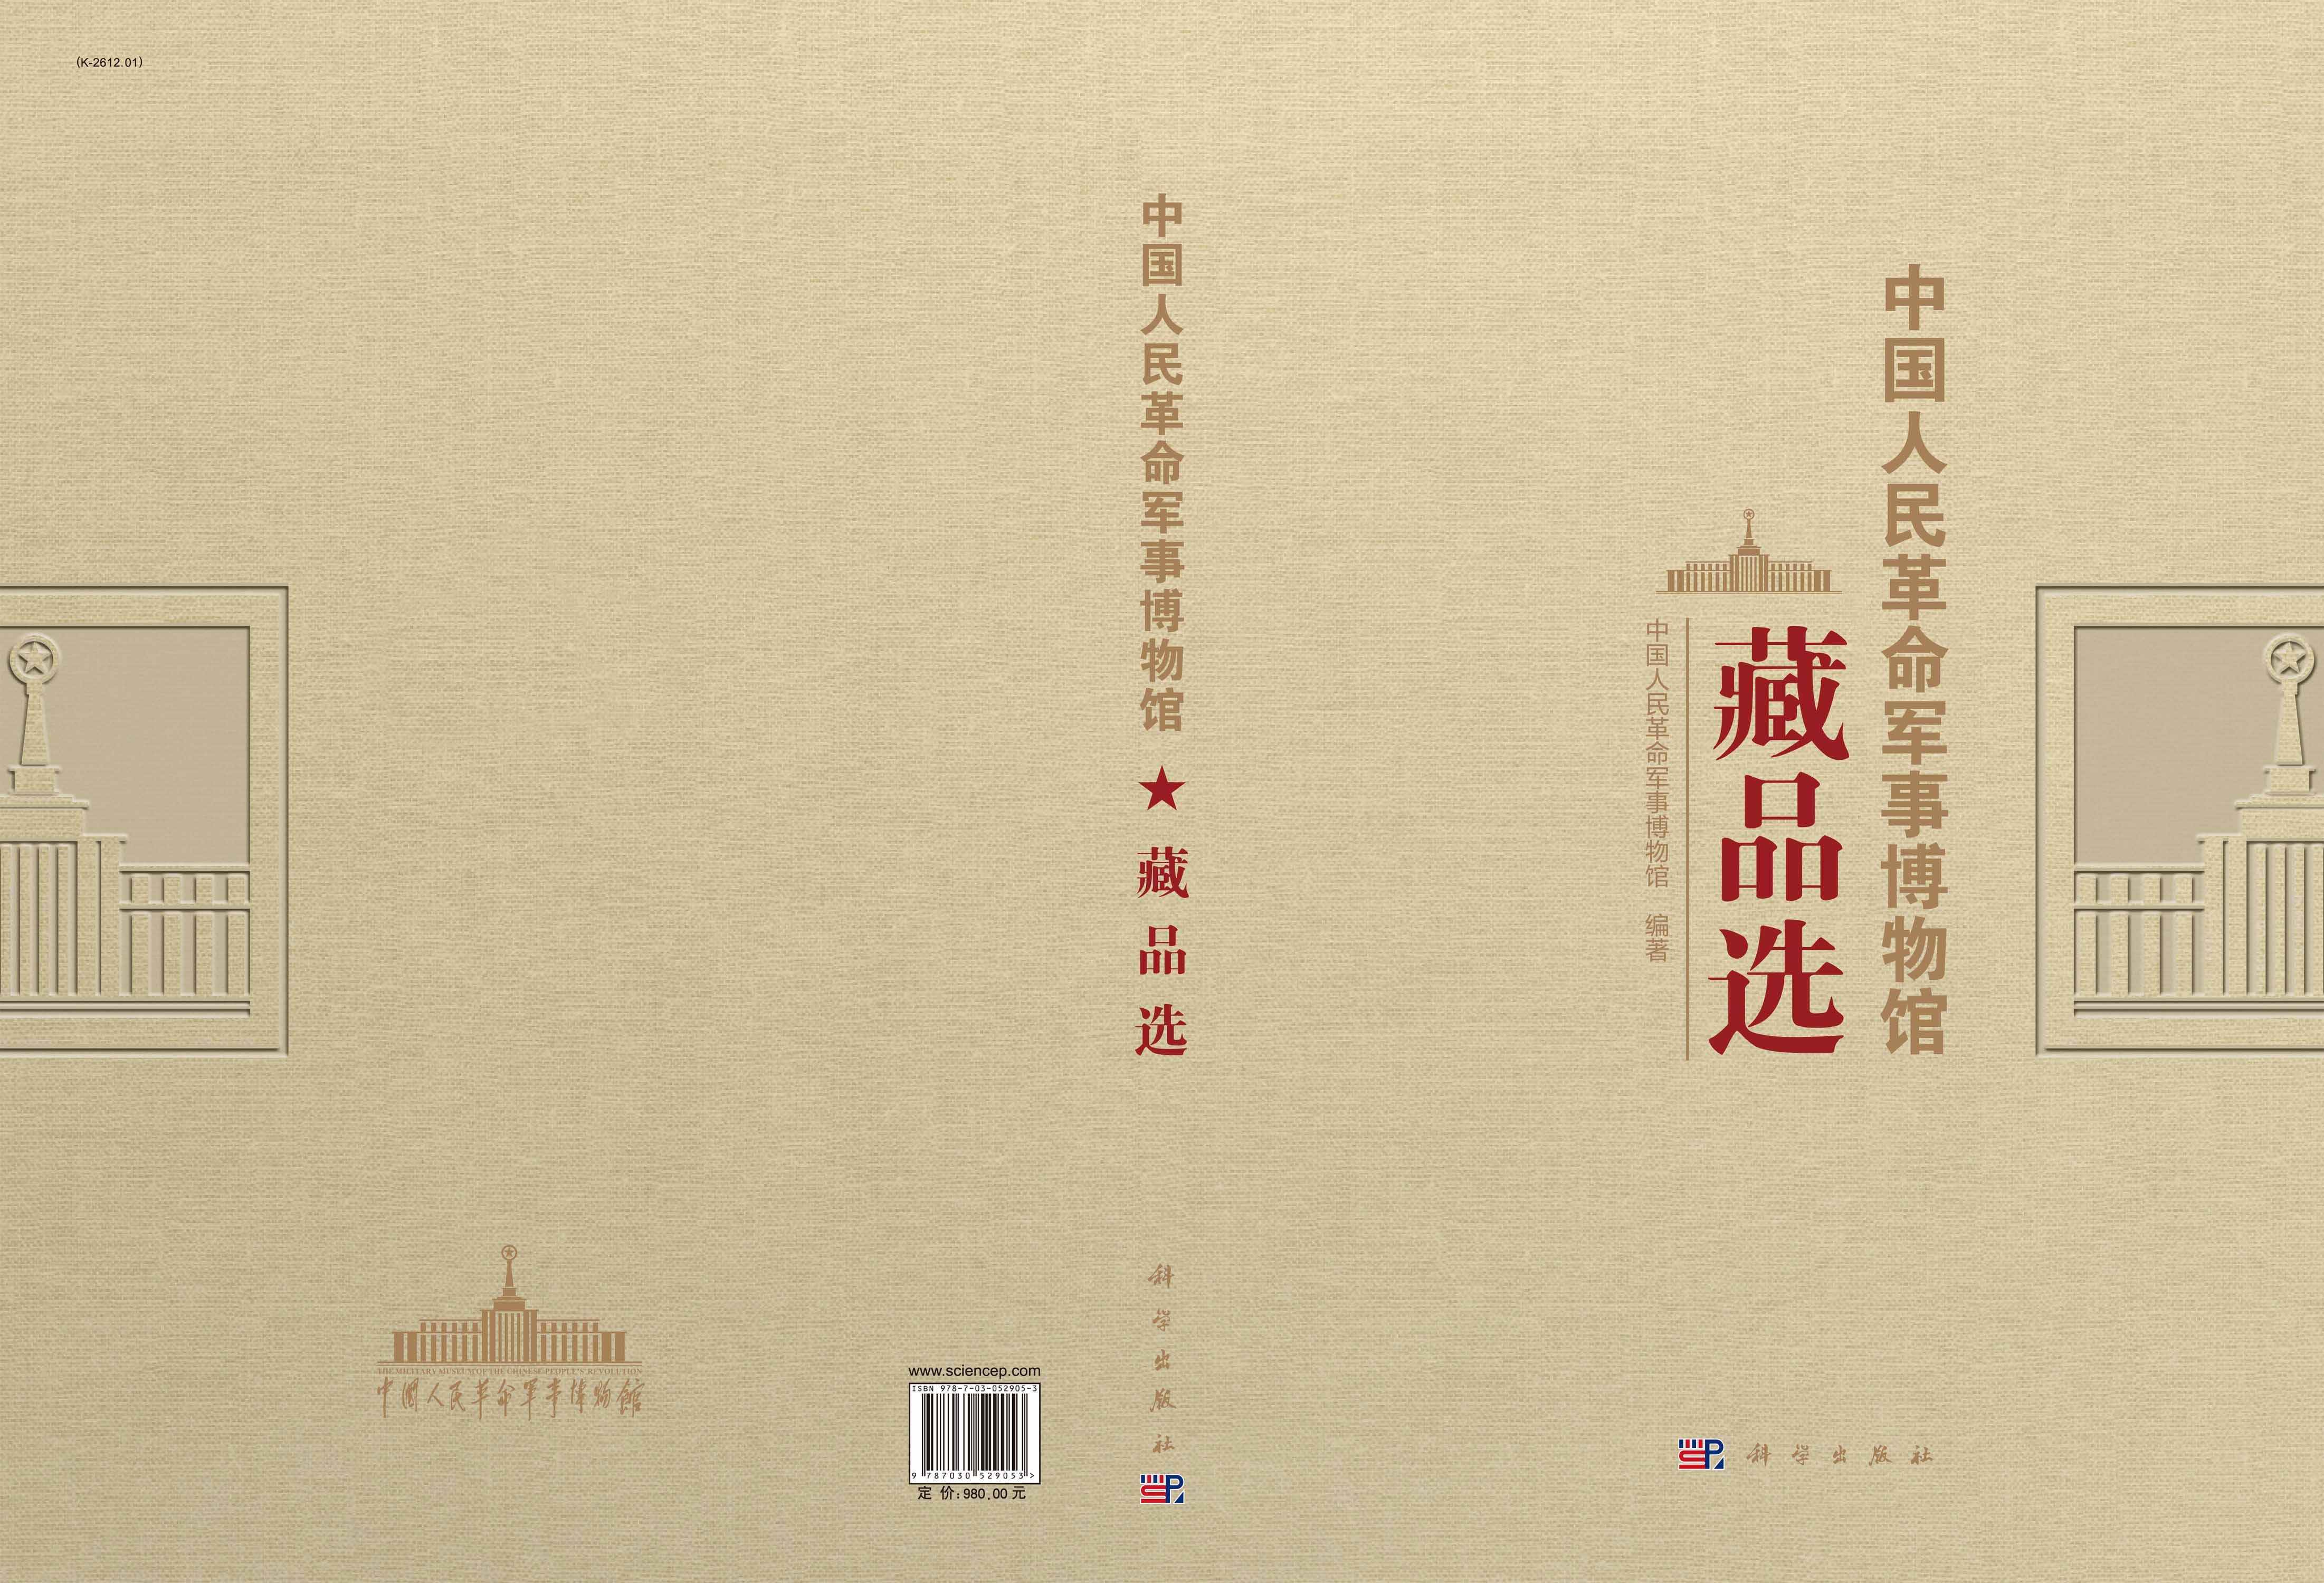 中国人民革命军事博物馆藏品选